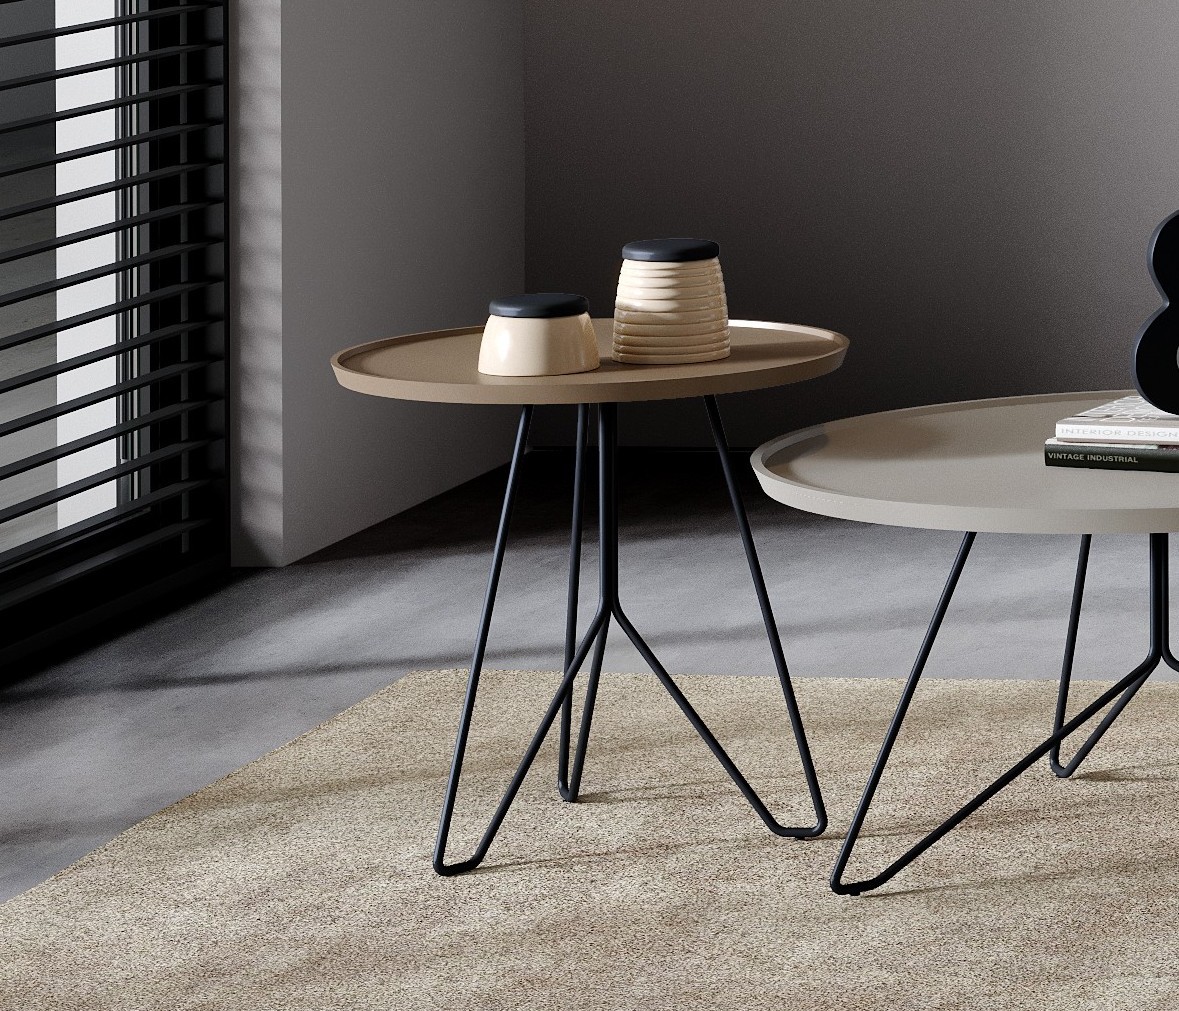 A mesa de apoio Tube é a escolha perfeita para um estilo moderno e minimalista. Deixe a sua sala ou escritório com uma elegância única e sofisticada!